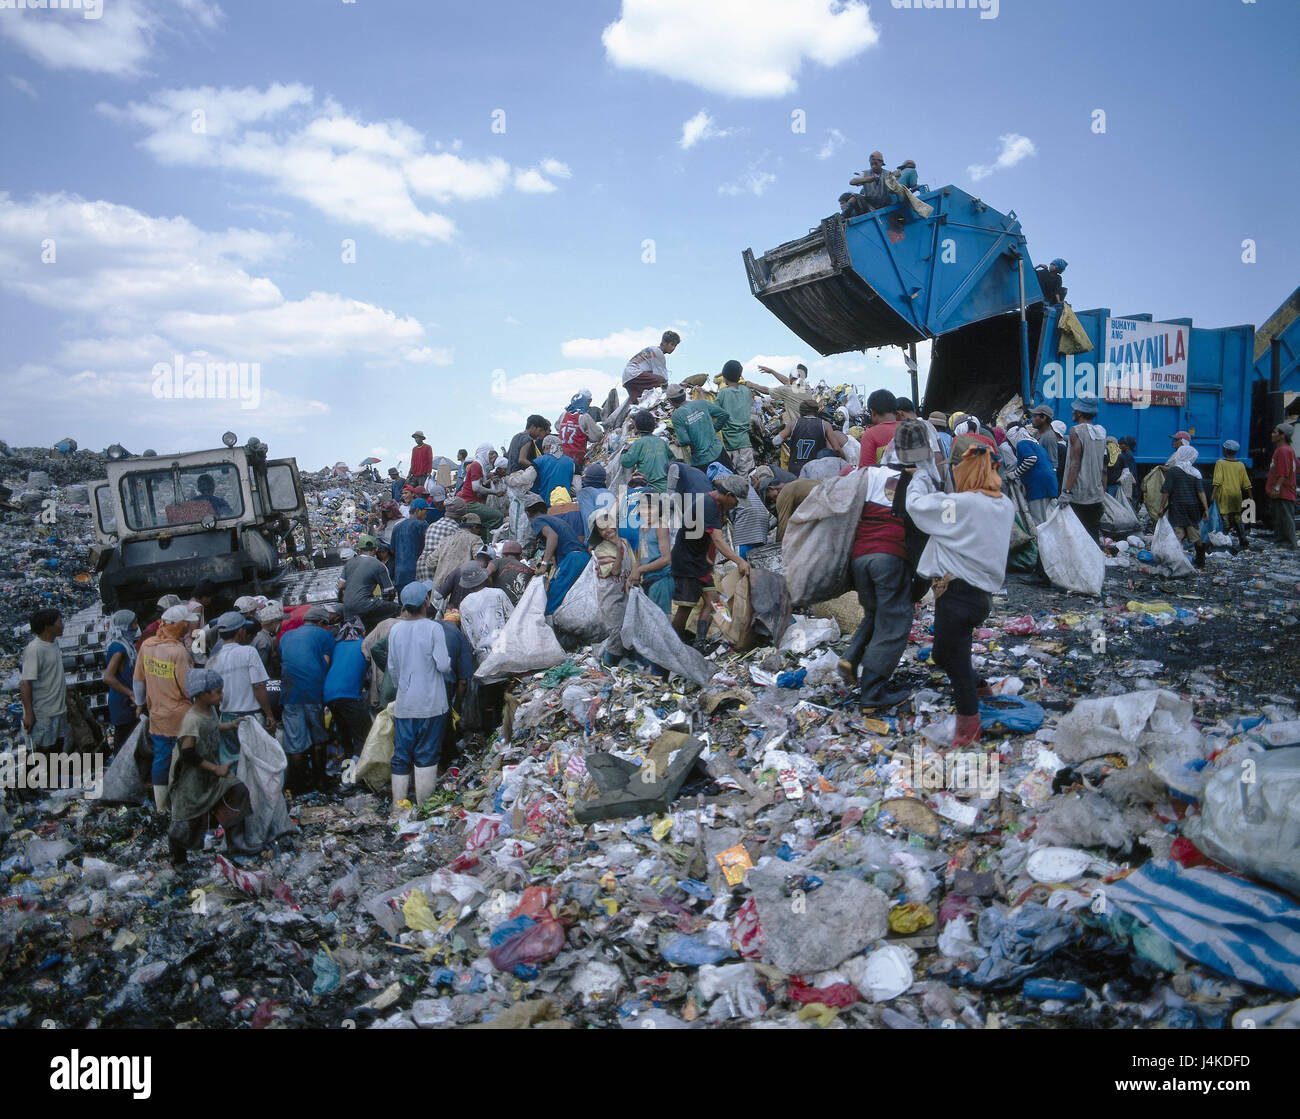 Le Filippine, Manila, garbage dump, 'Smokey Mountain' locali, rifiuti, distinguere, raccogliere il sud-est asiatico, arcipelago malese, isola gruppo, isola, capitale, mucchio di rifiuti, rifiuti, rifiuti, rifiuti, povertà, scarsa impecunious, garbage bambini, immondizia, lotta di sopravvivenza Foto Stock